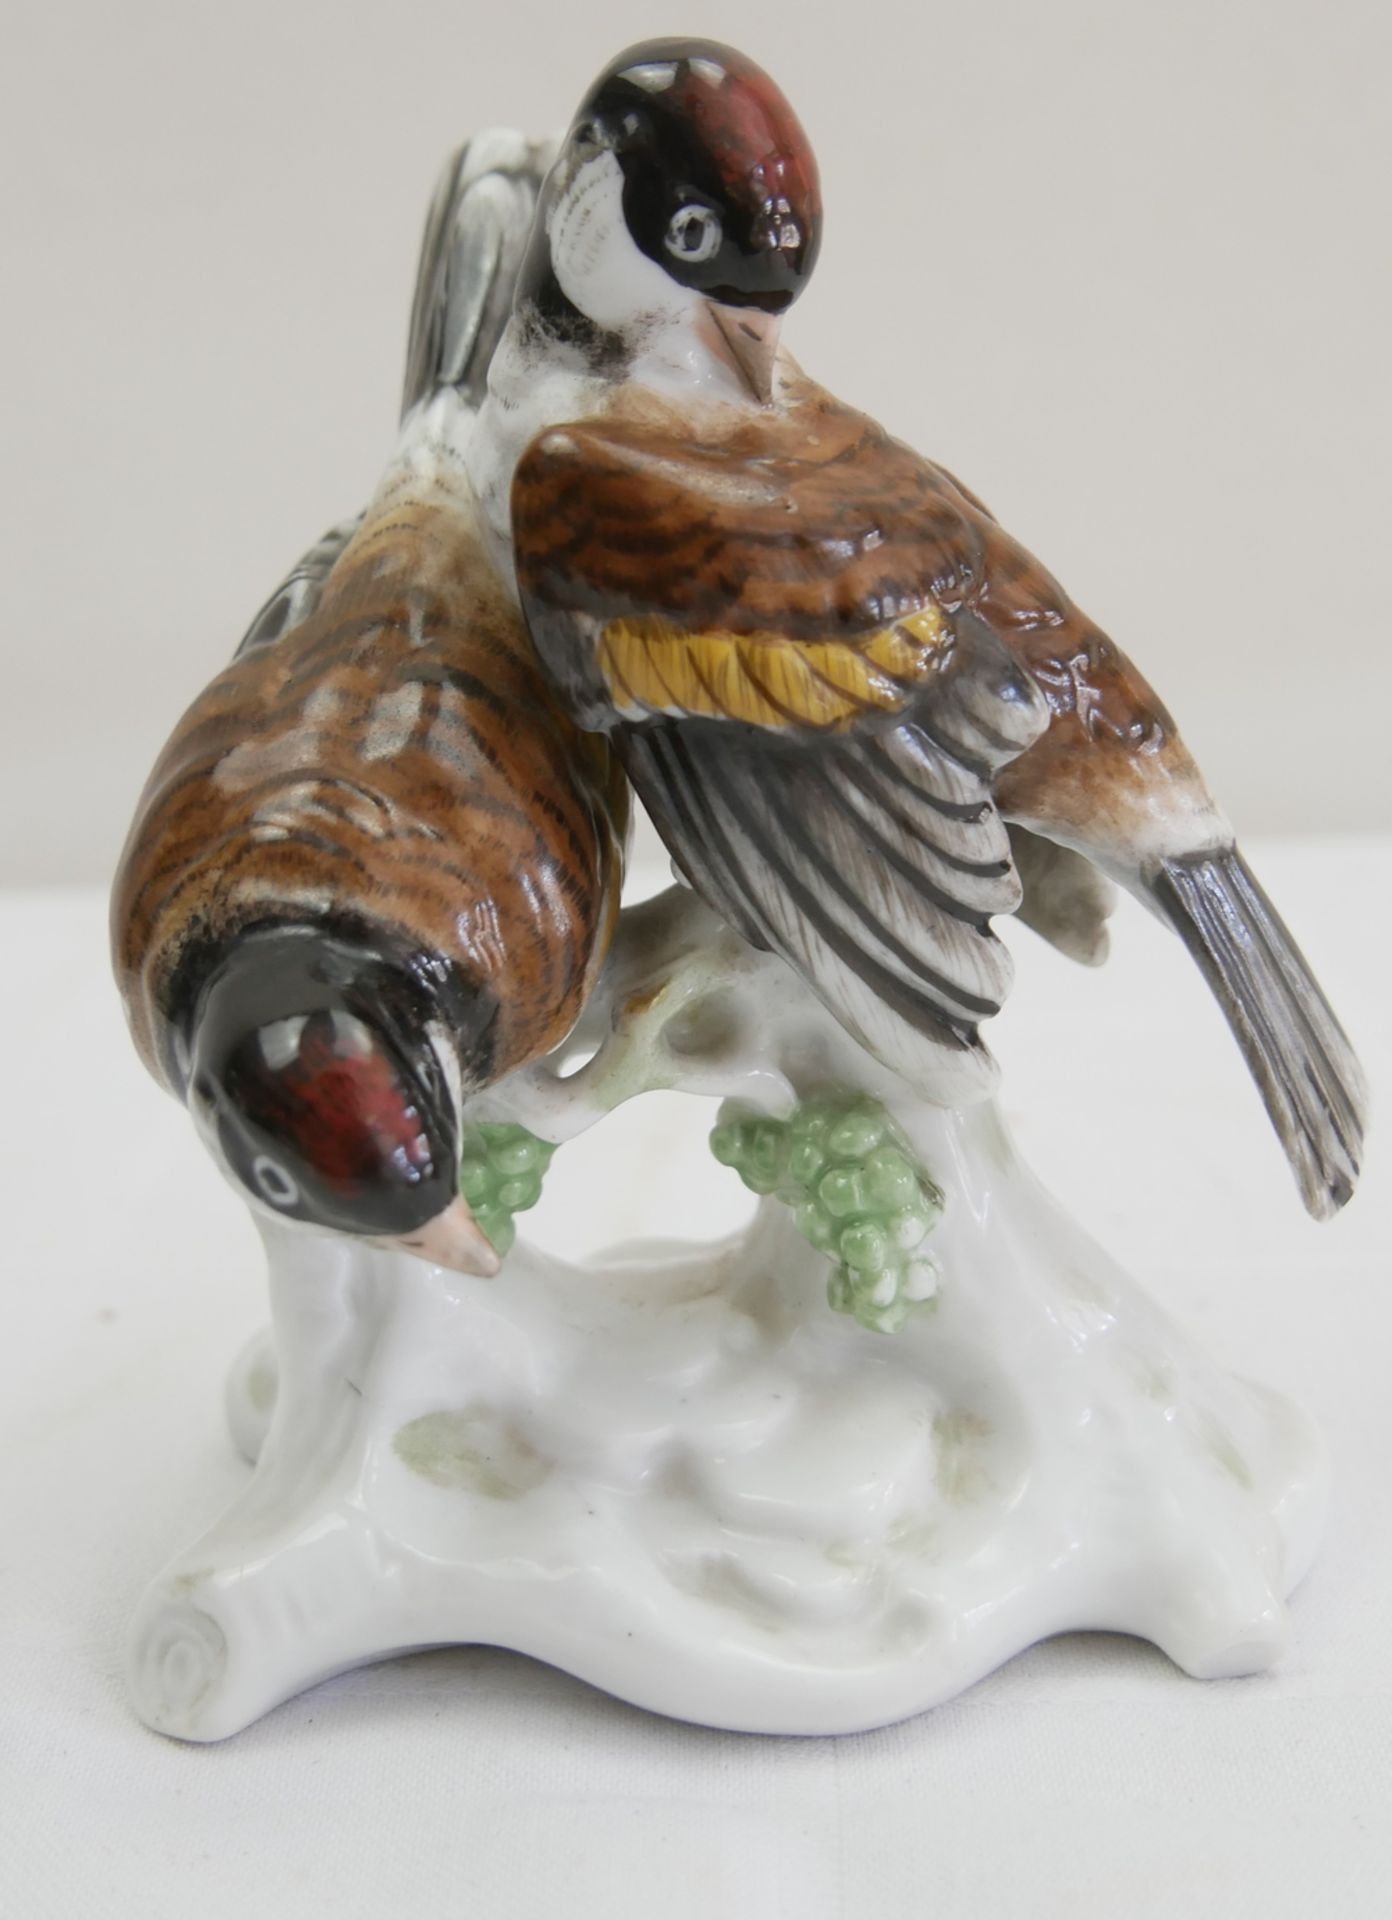 Porzellan Figur "Vogelpaar" Fa Lenck Passau, Stempelmarke und Formnr. 5333. Höhe ca. 13,5 cm